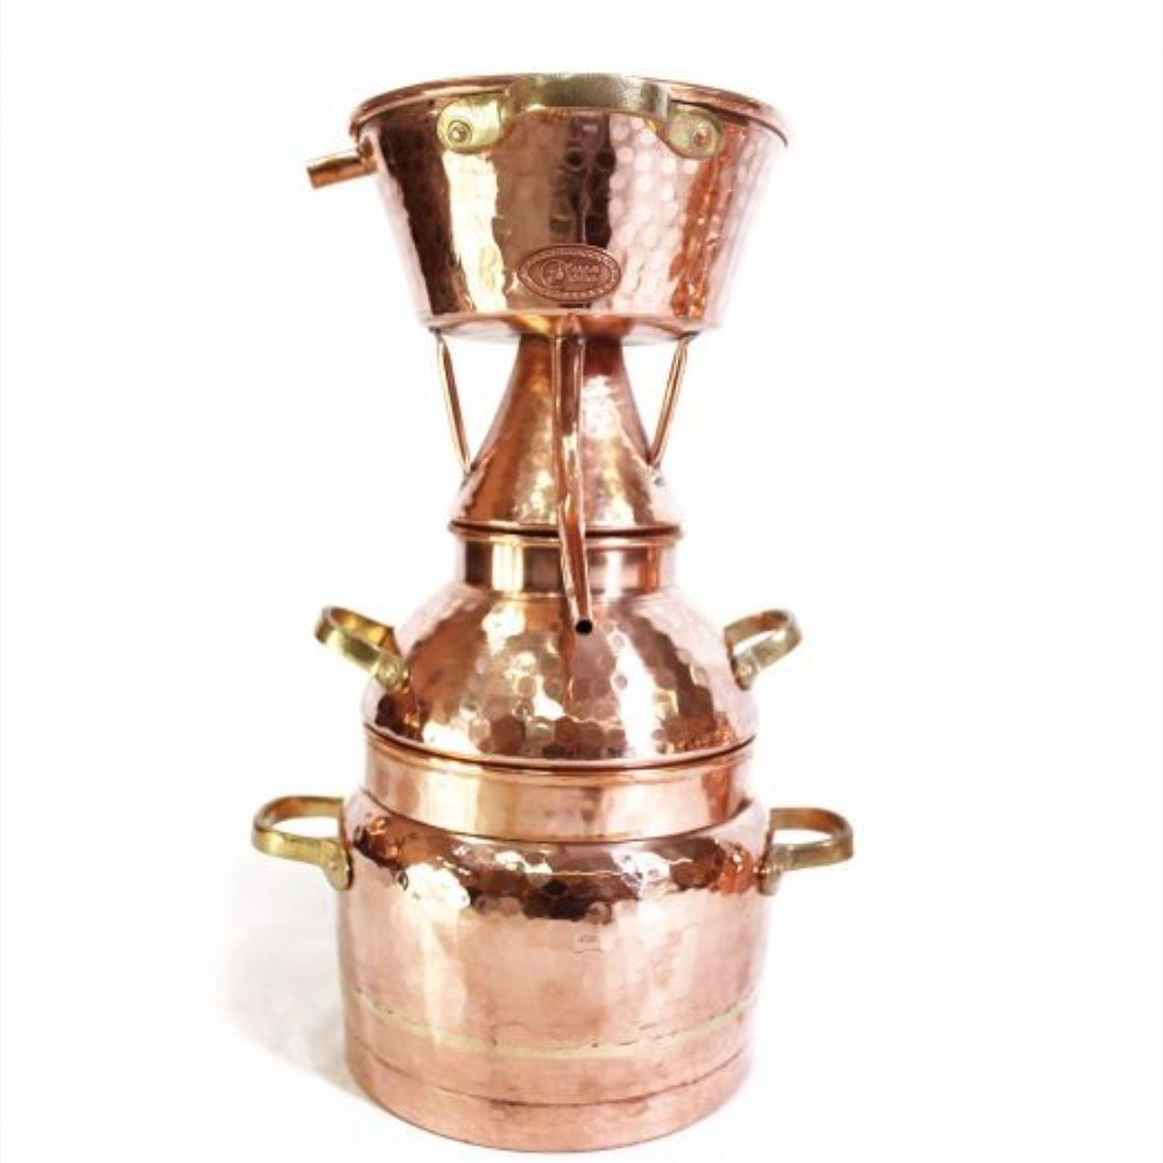 CopperGarden Destille Alquitara, 3 Liter, für ätherische Öle,  handgeschmiedet aus Kupfer, 3 Liter, Destillen, Destillen